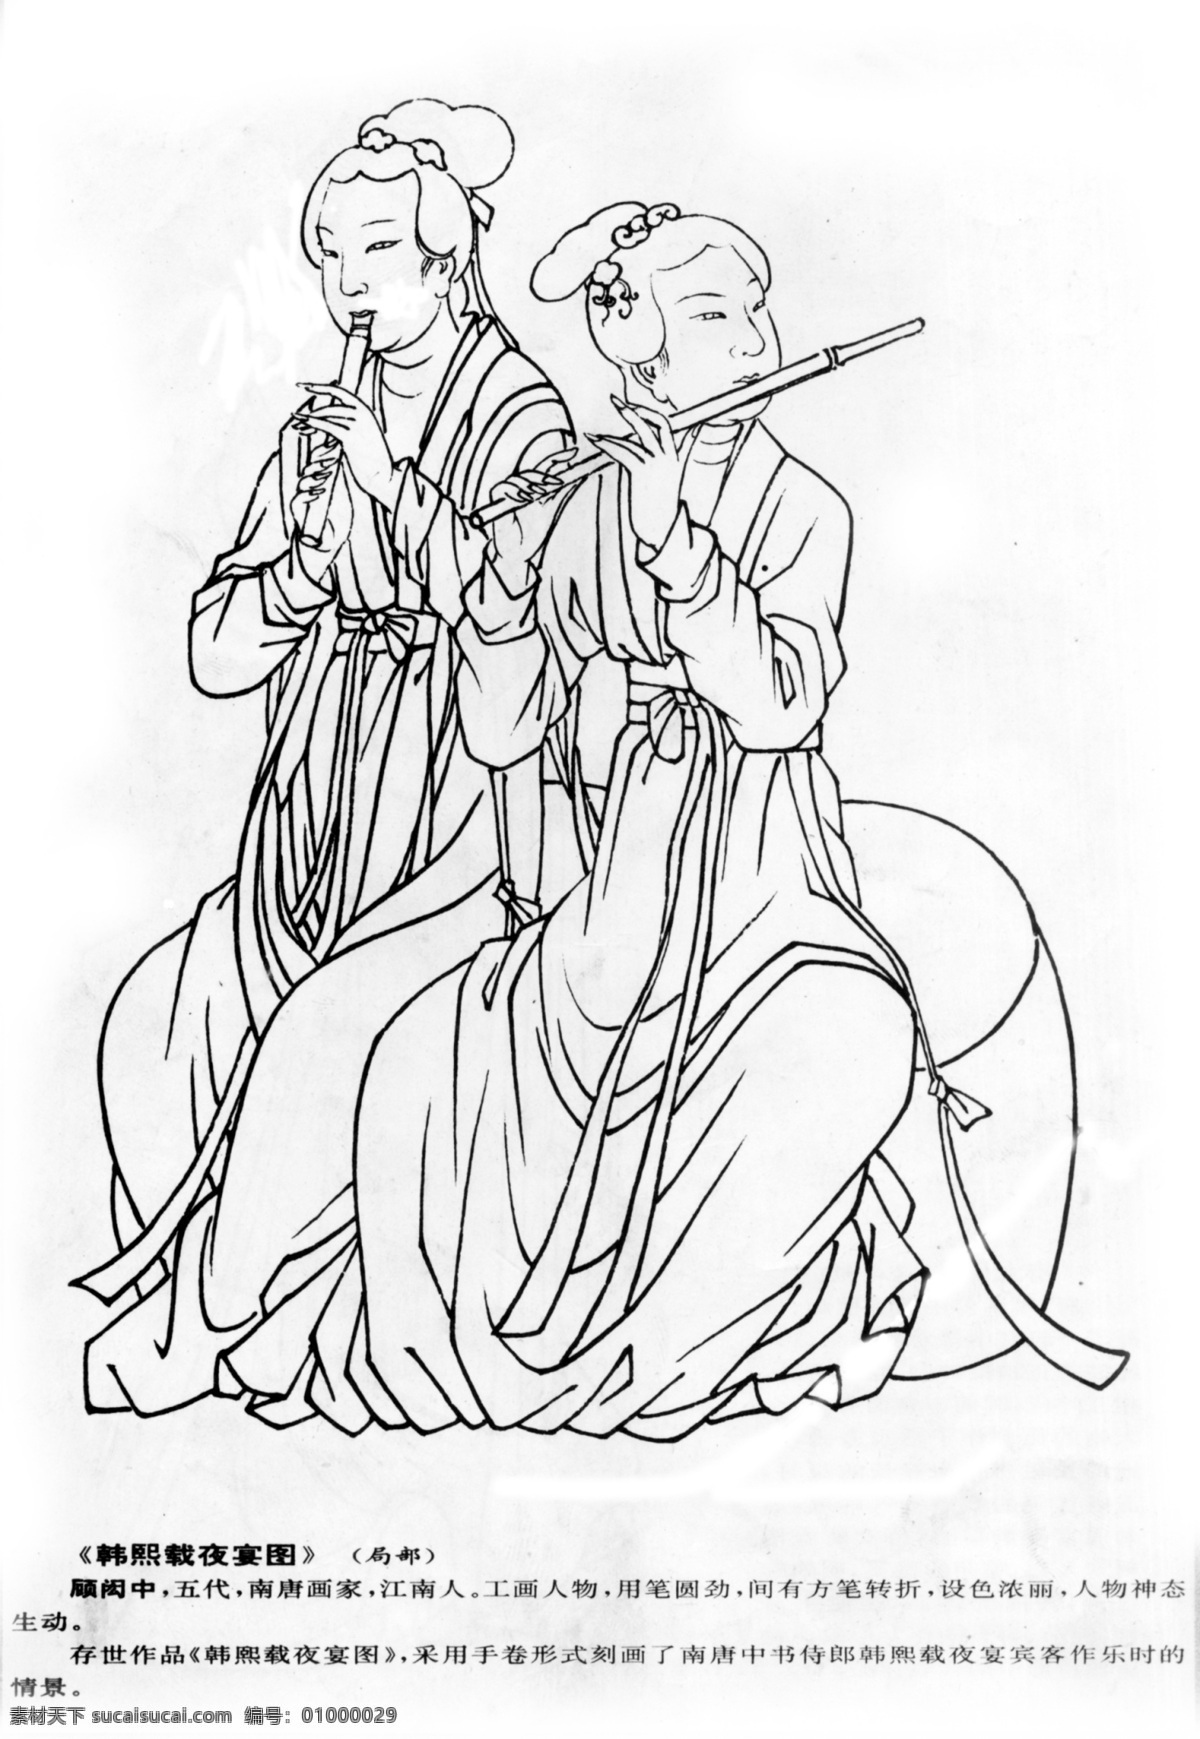 传统 雕刻 绘画 白描 工笔人物 韩熙载夜宴图 文化艺术